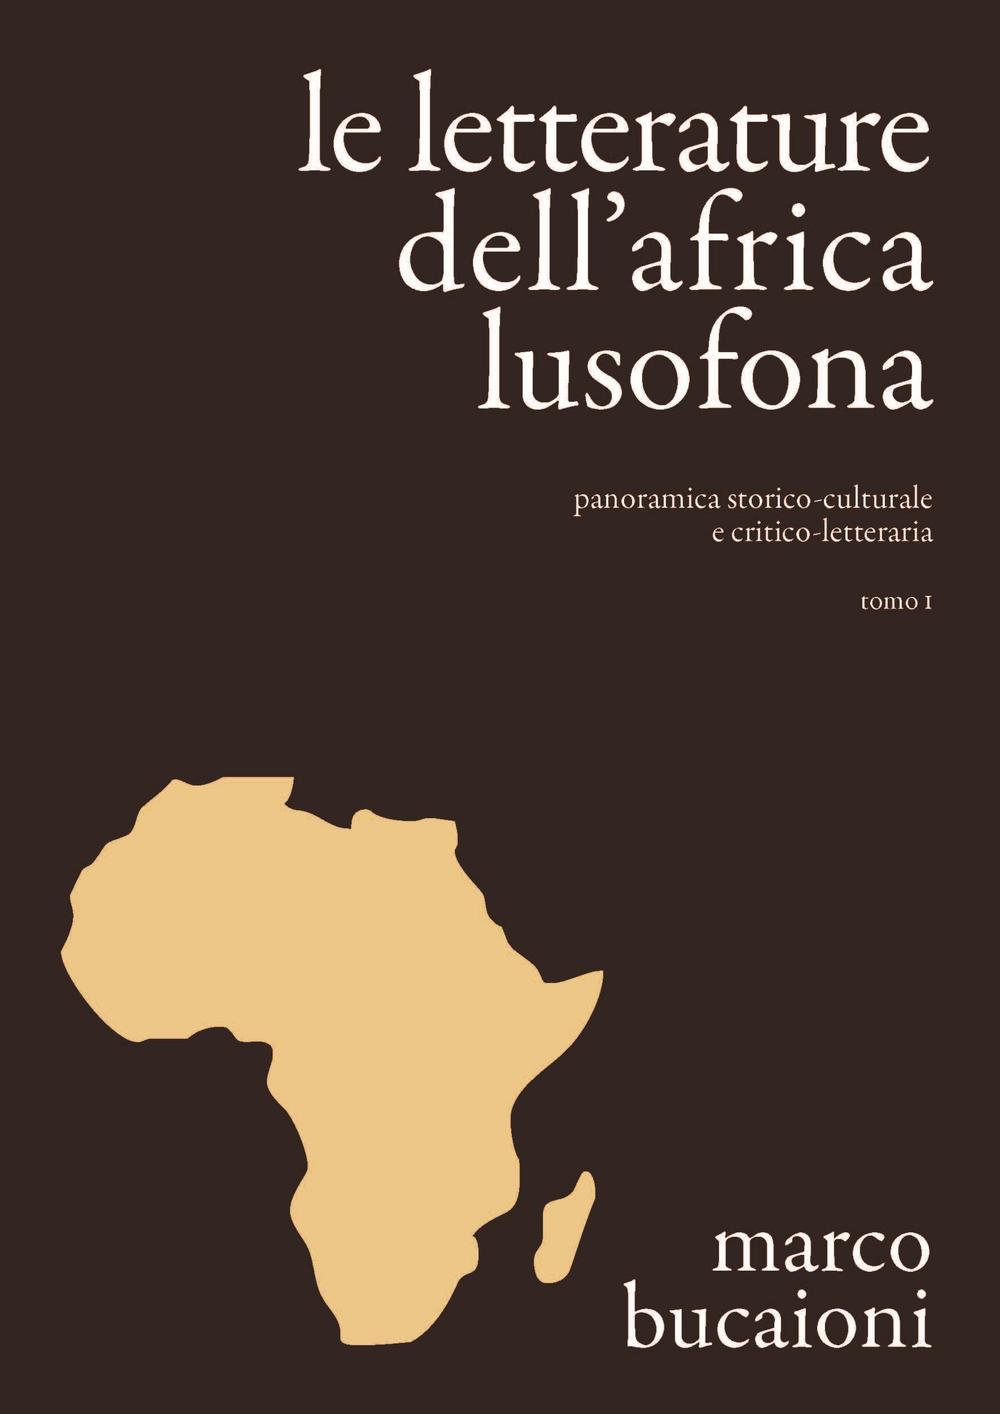 Le letterature dell'Africa lusofona. Panoramica storico-culturale e critico-letteraria